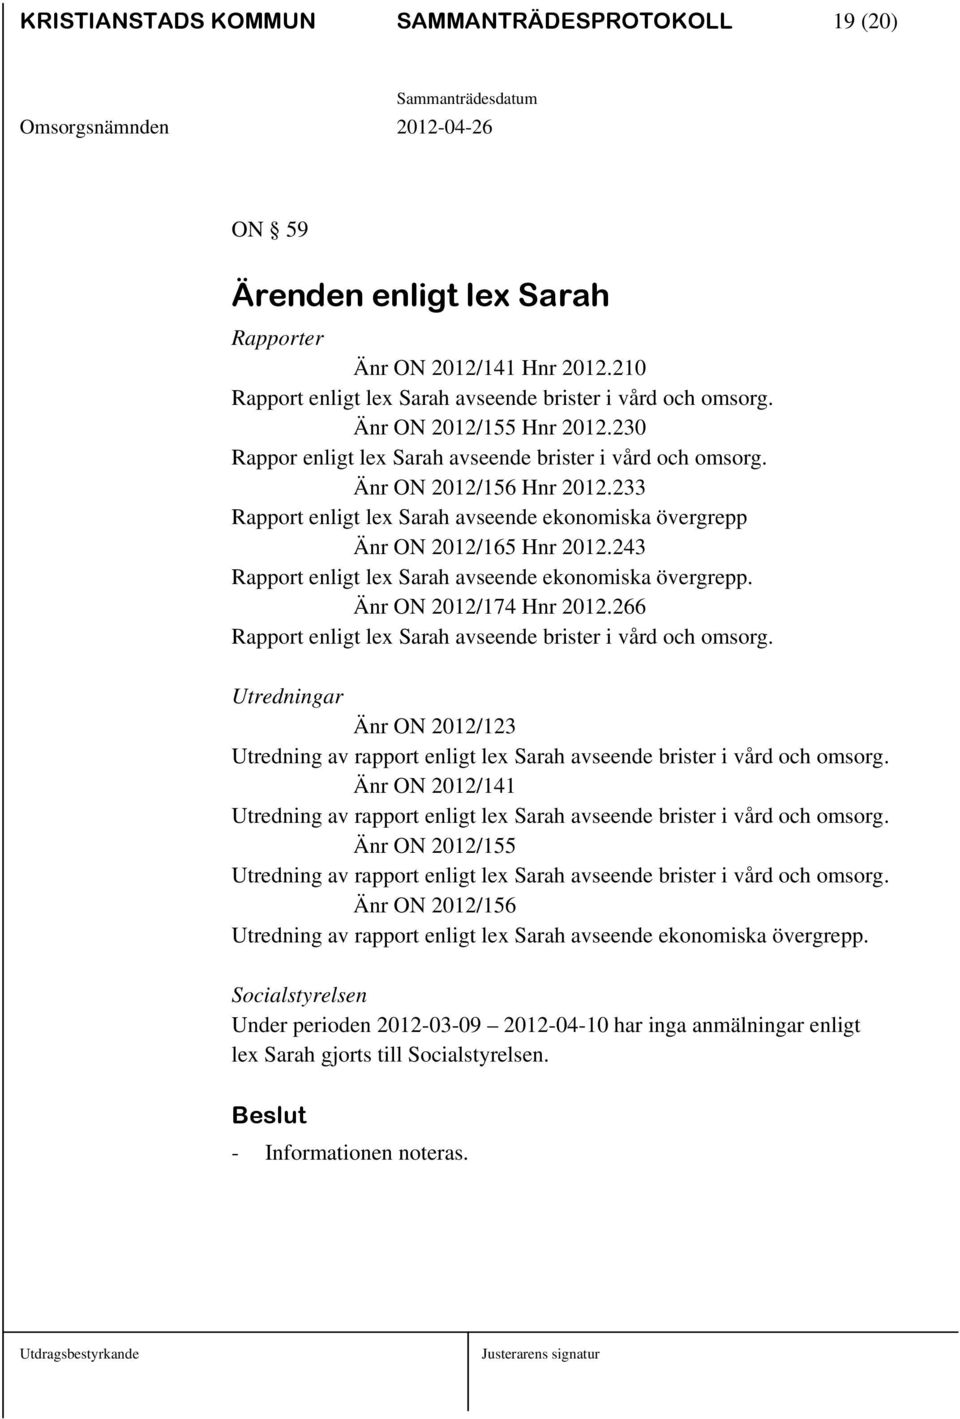 243 Rapport enligt lex Sarah avseende ekonomiska övergrepp. Änr ON 2012/174 Hnr 2012.266 Rapport enligt lex Sarah avseende brister i vård och omsorg.